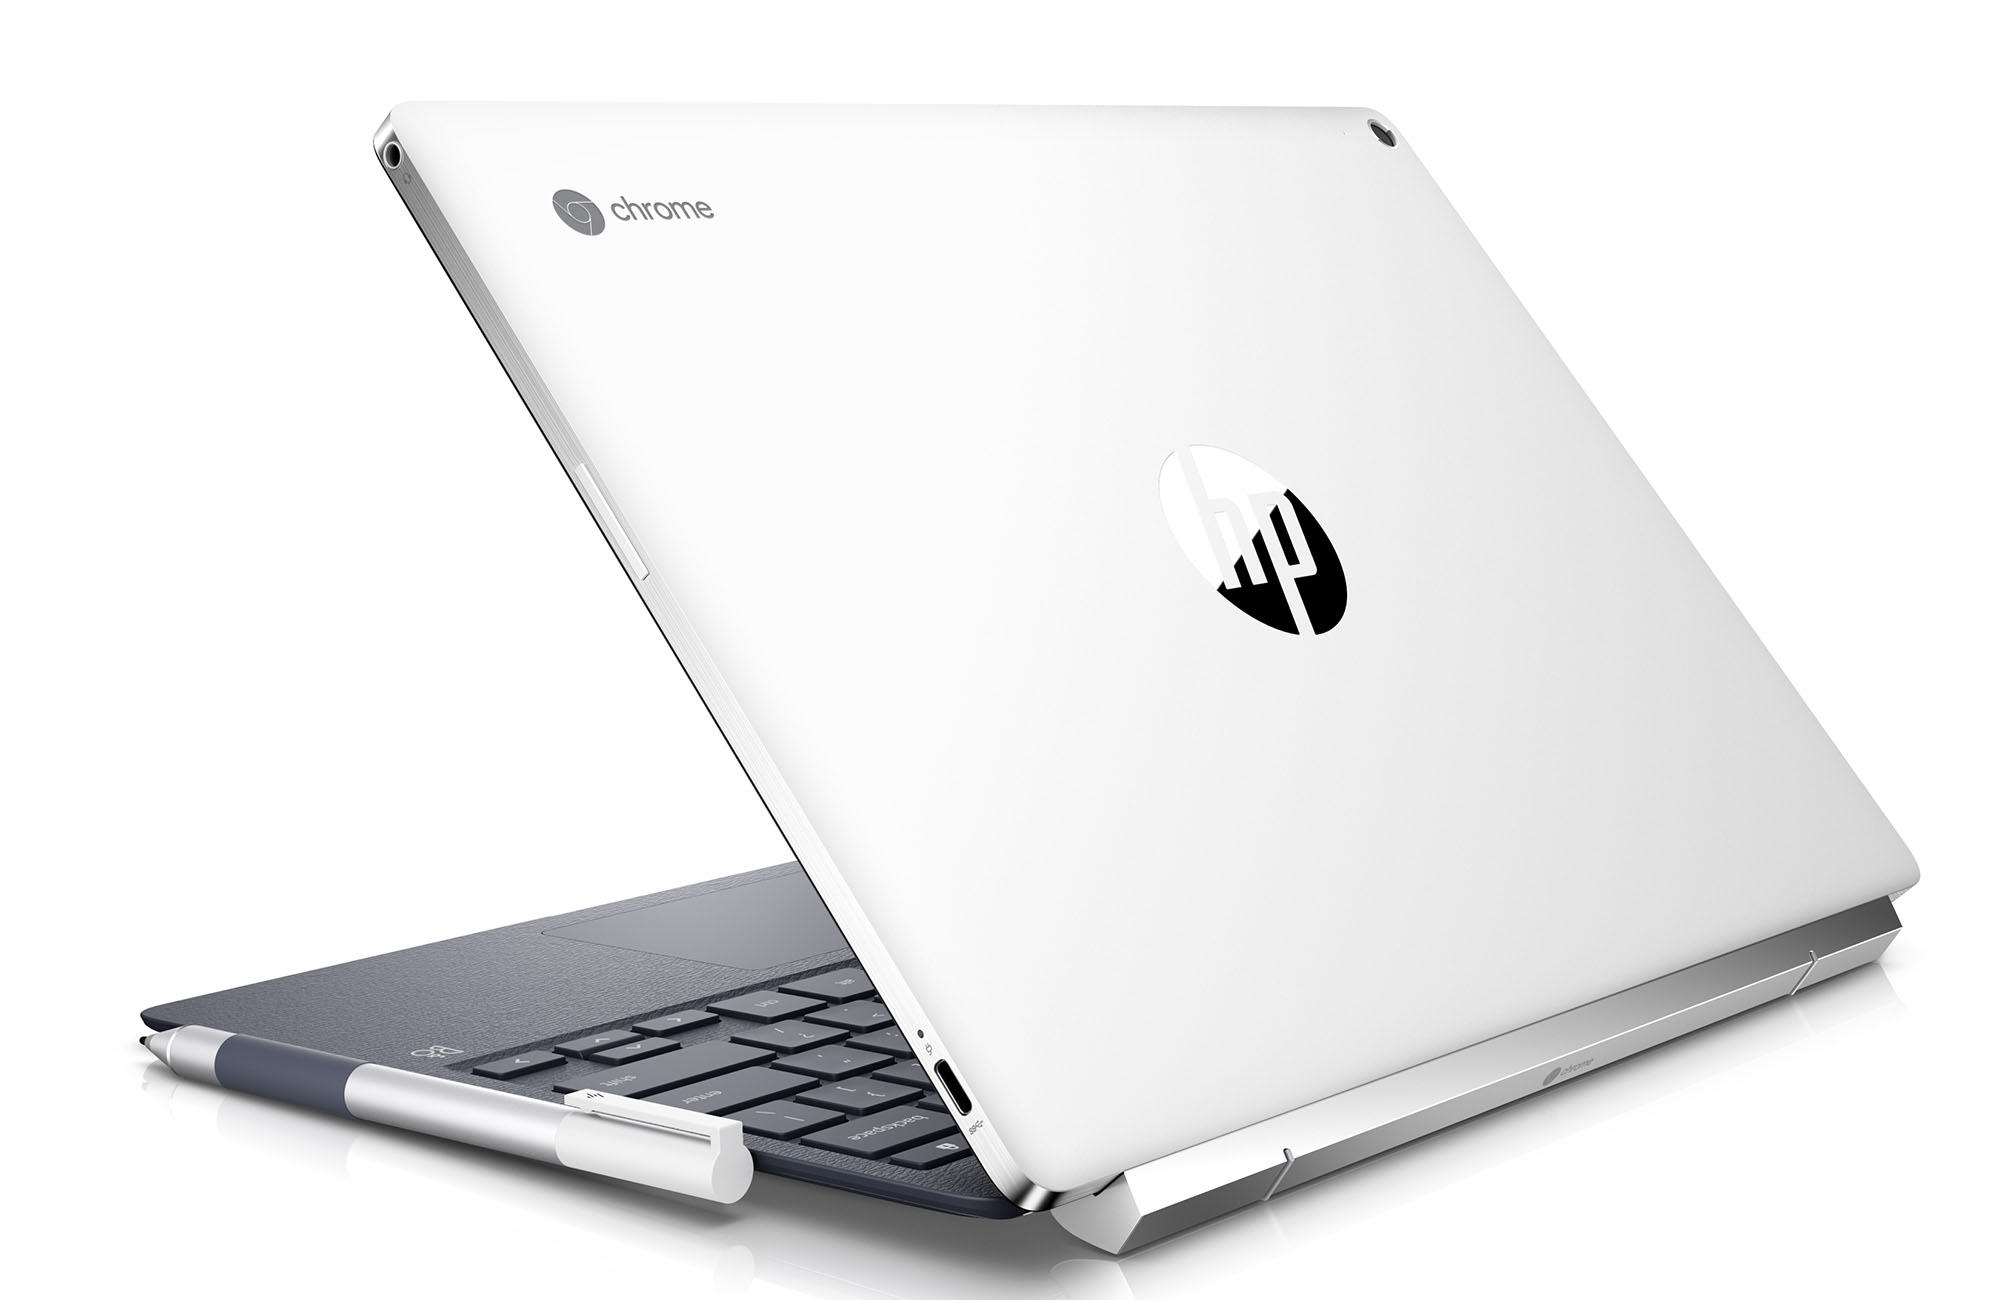 HP dévoile le chromebook x2, une tablette convertible en PC